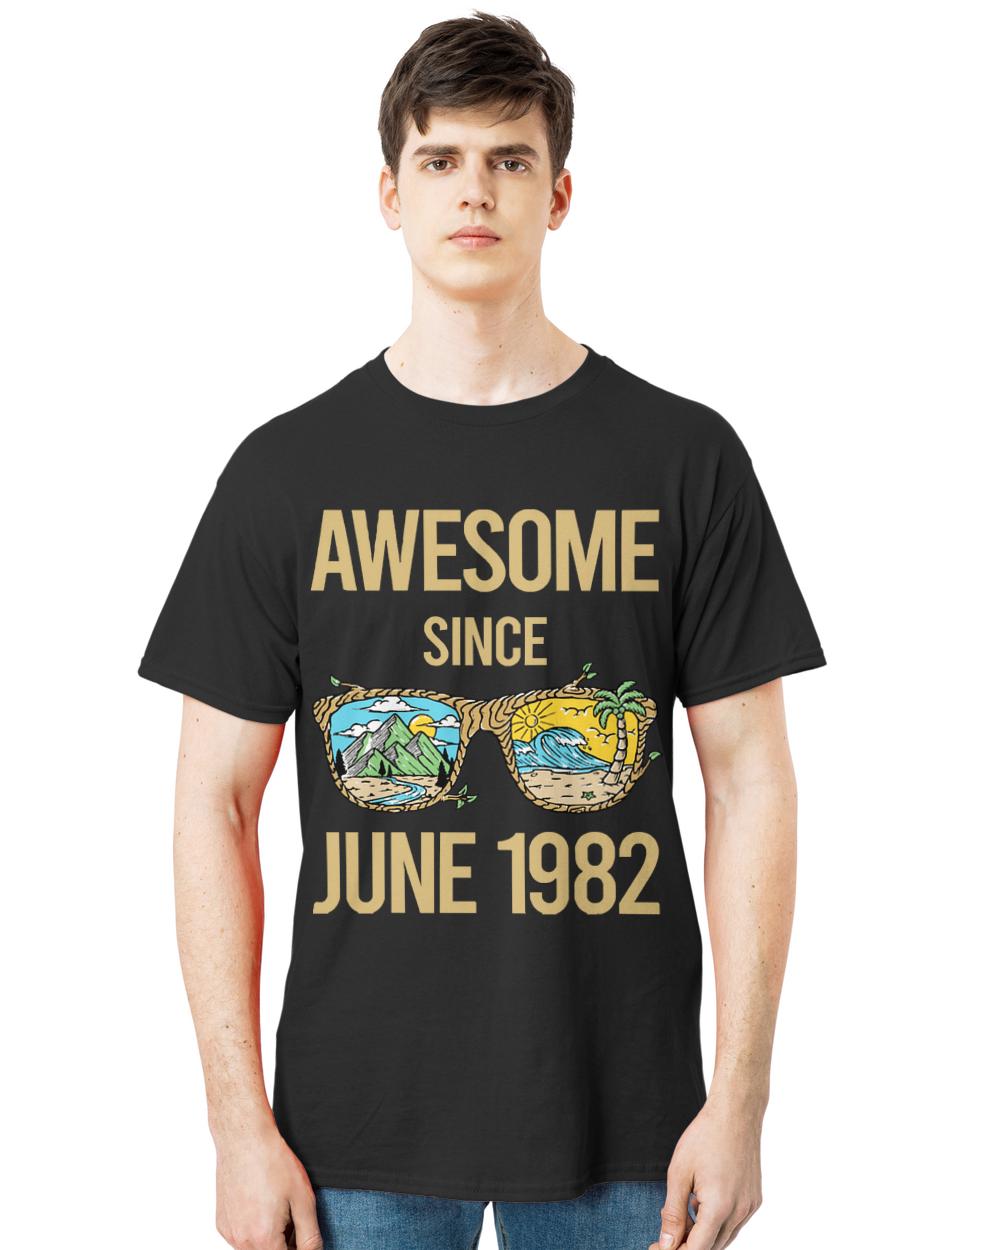 June 1982 T- Shirt Landscape Art - June 1982 T- Shirt